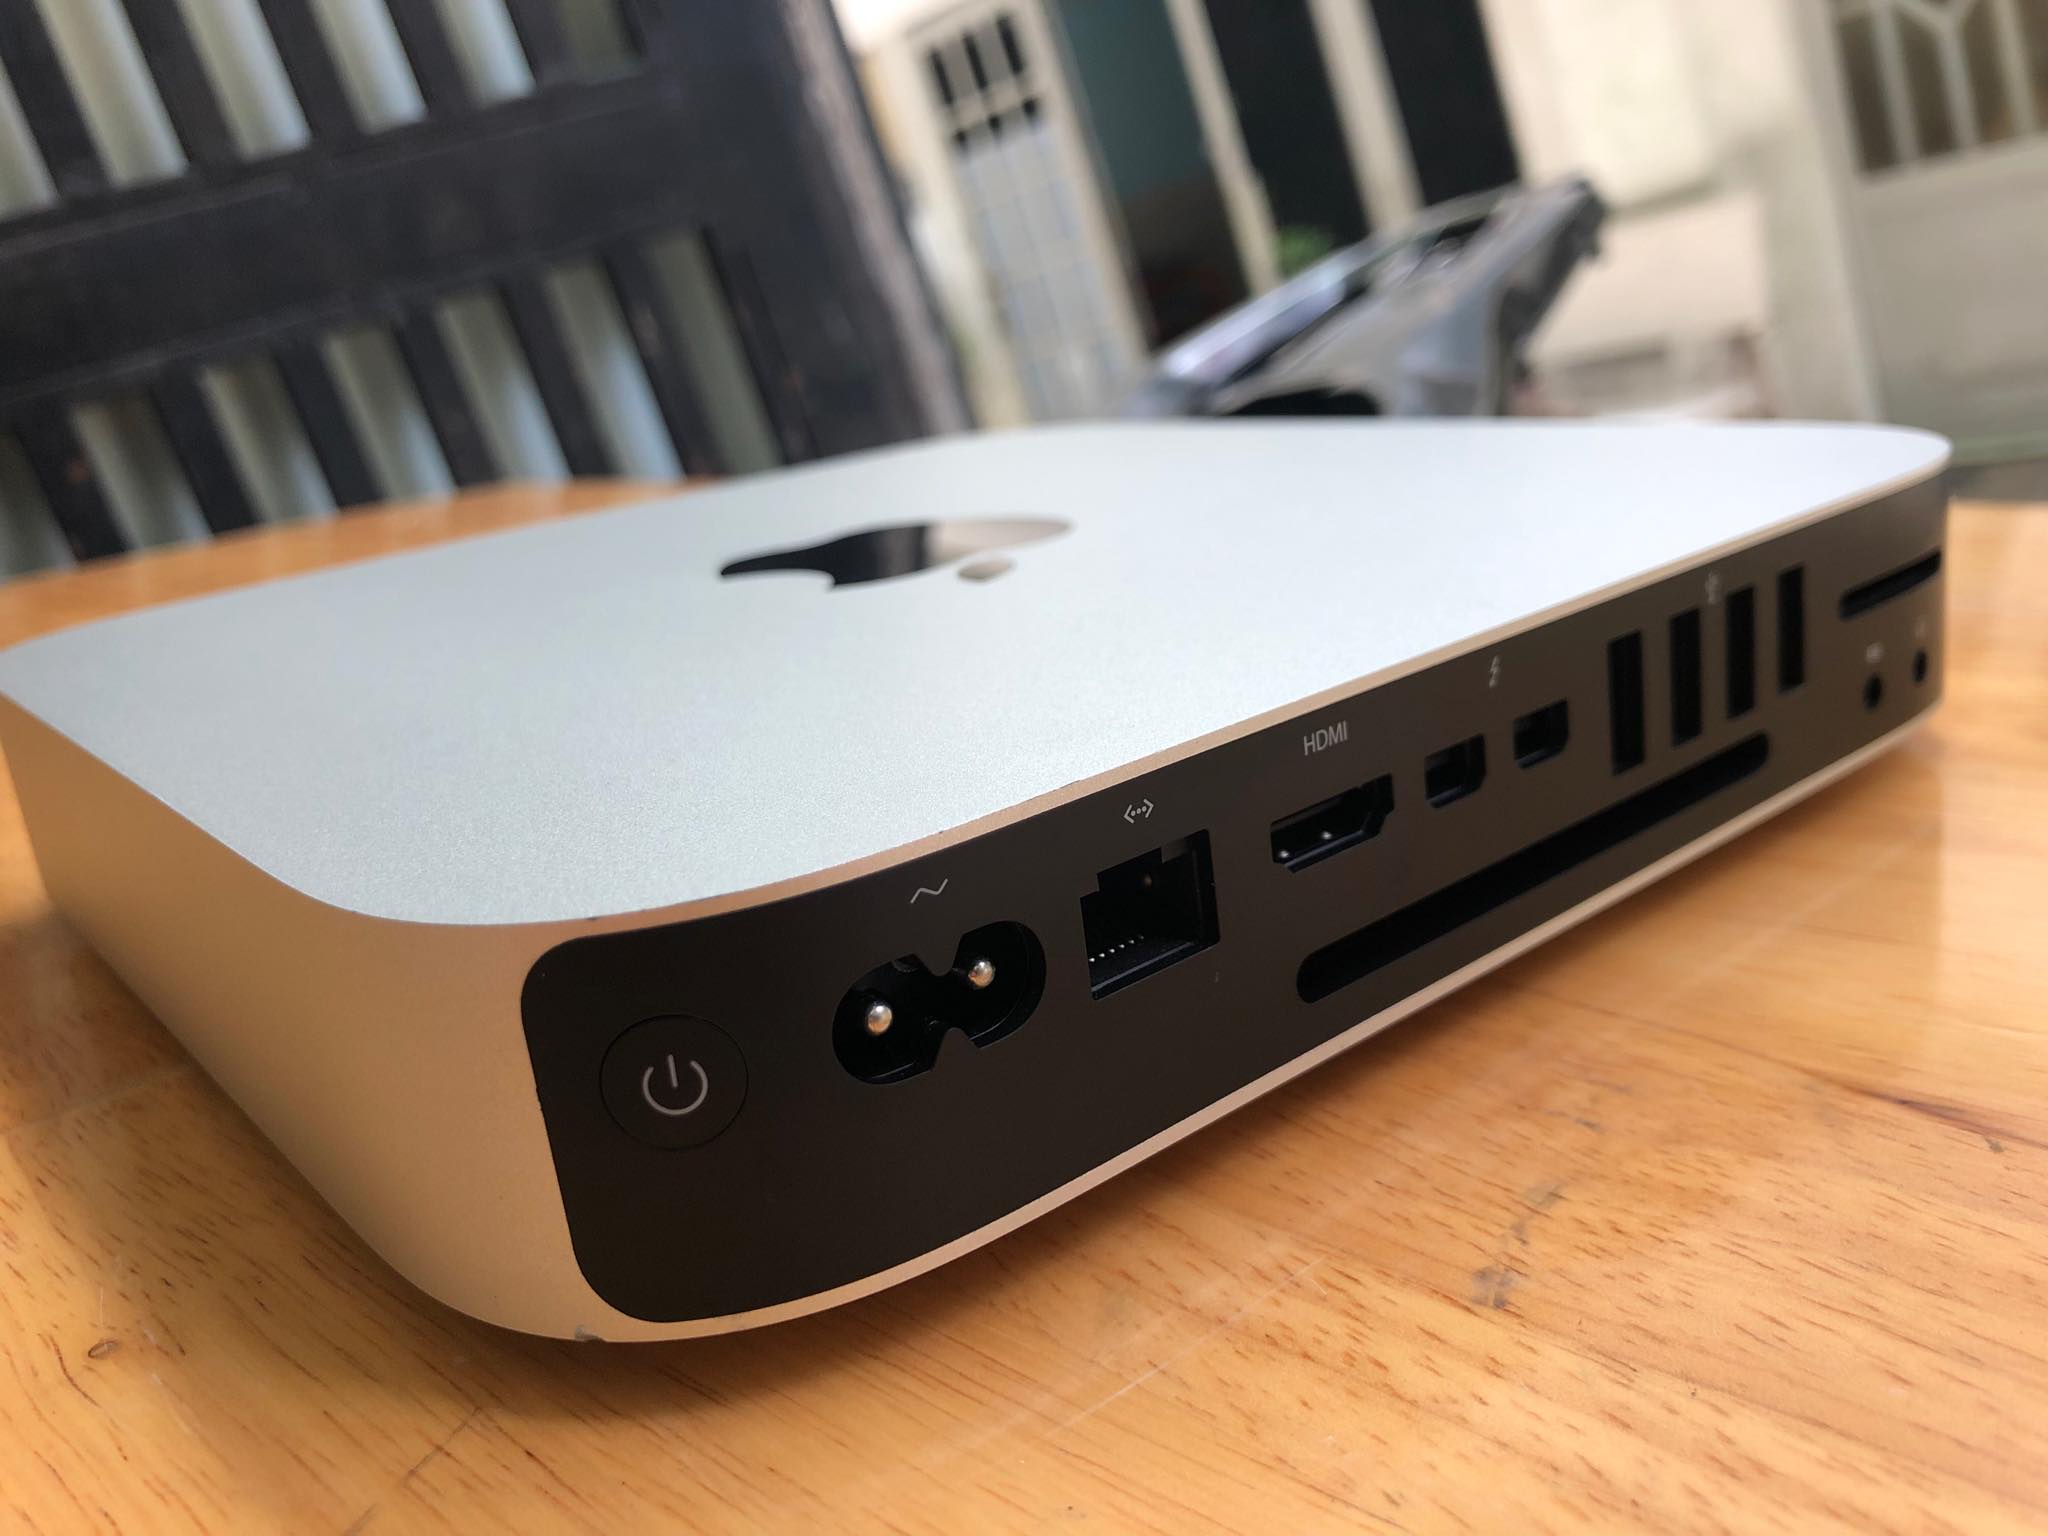 Mac Mini 2014, i5 – 1.4G, 4G, 500G | laptop cũ giá rẻ